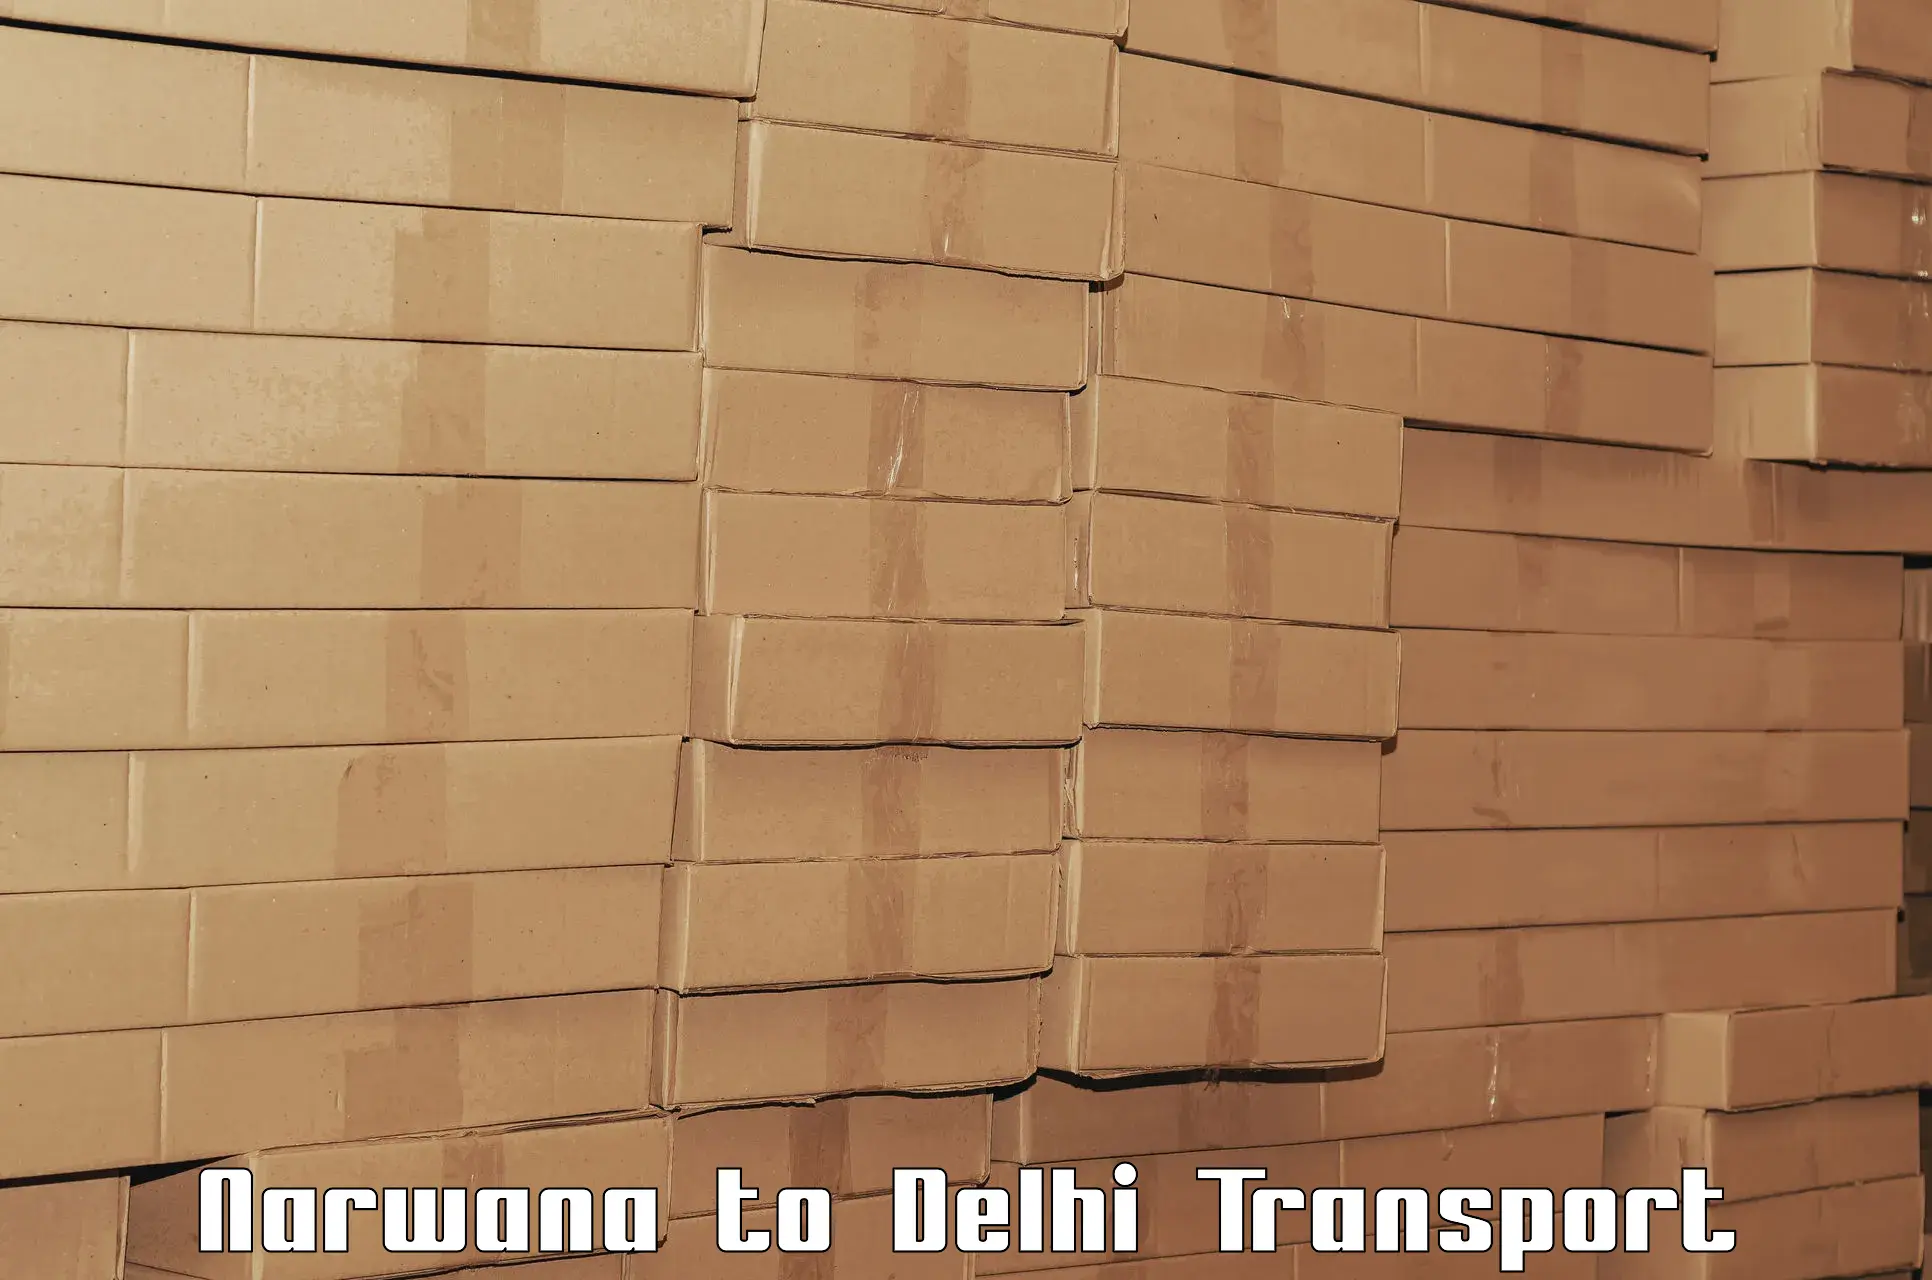 Transport shared services Narwana to Jamia Hamdard New Delhi